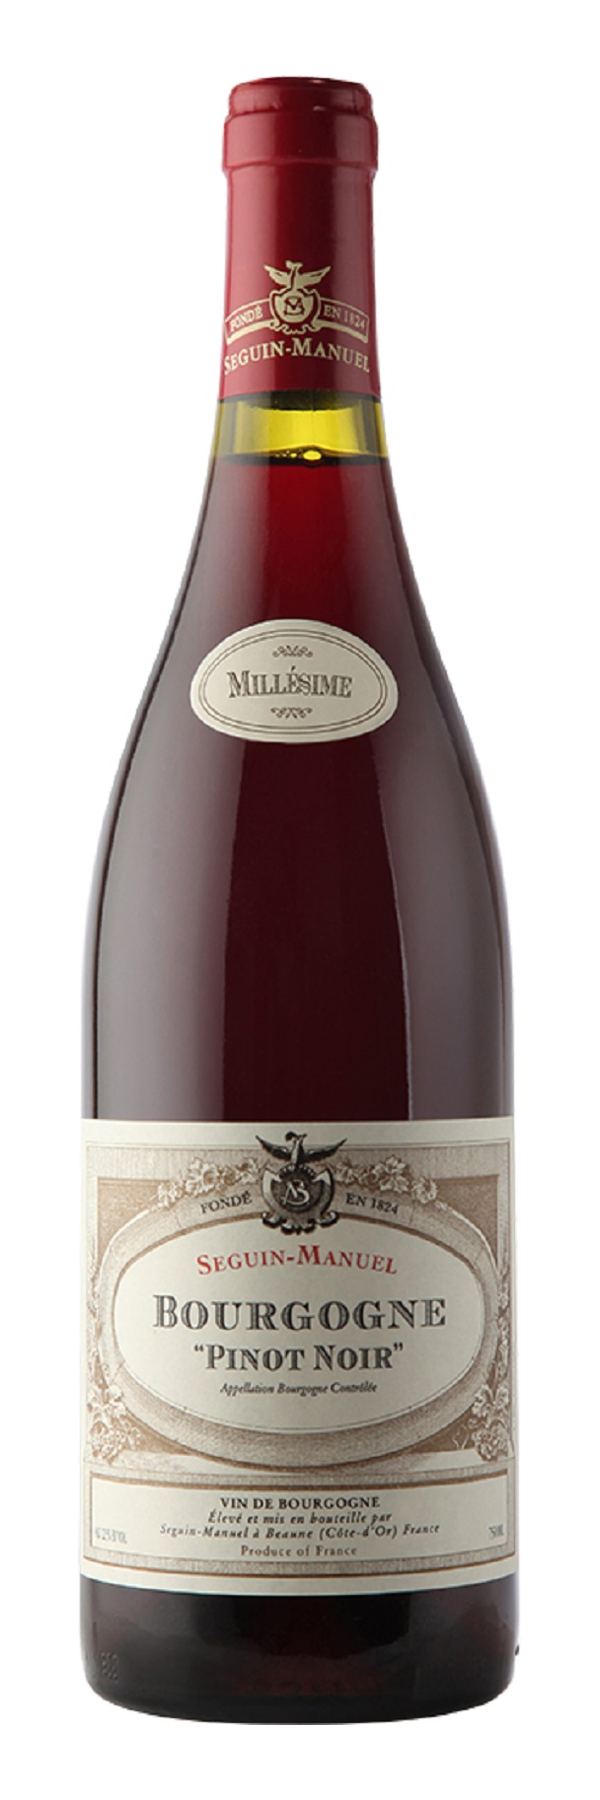 Seguin-Manuel Bourgogne Pinot Noir 2020 Shop LAKAAF.DE | 0,75l Wein